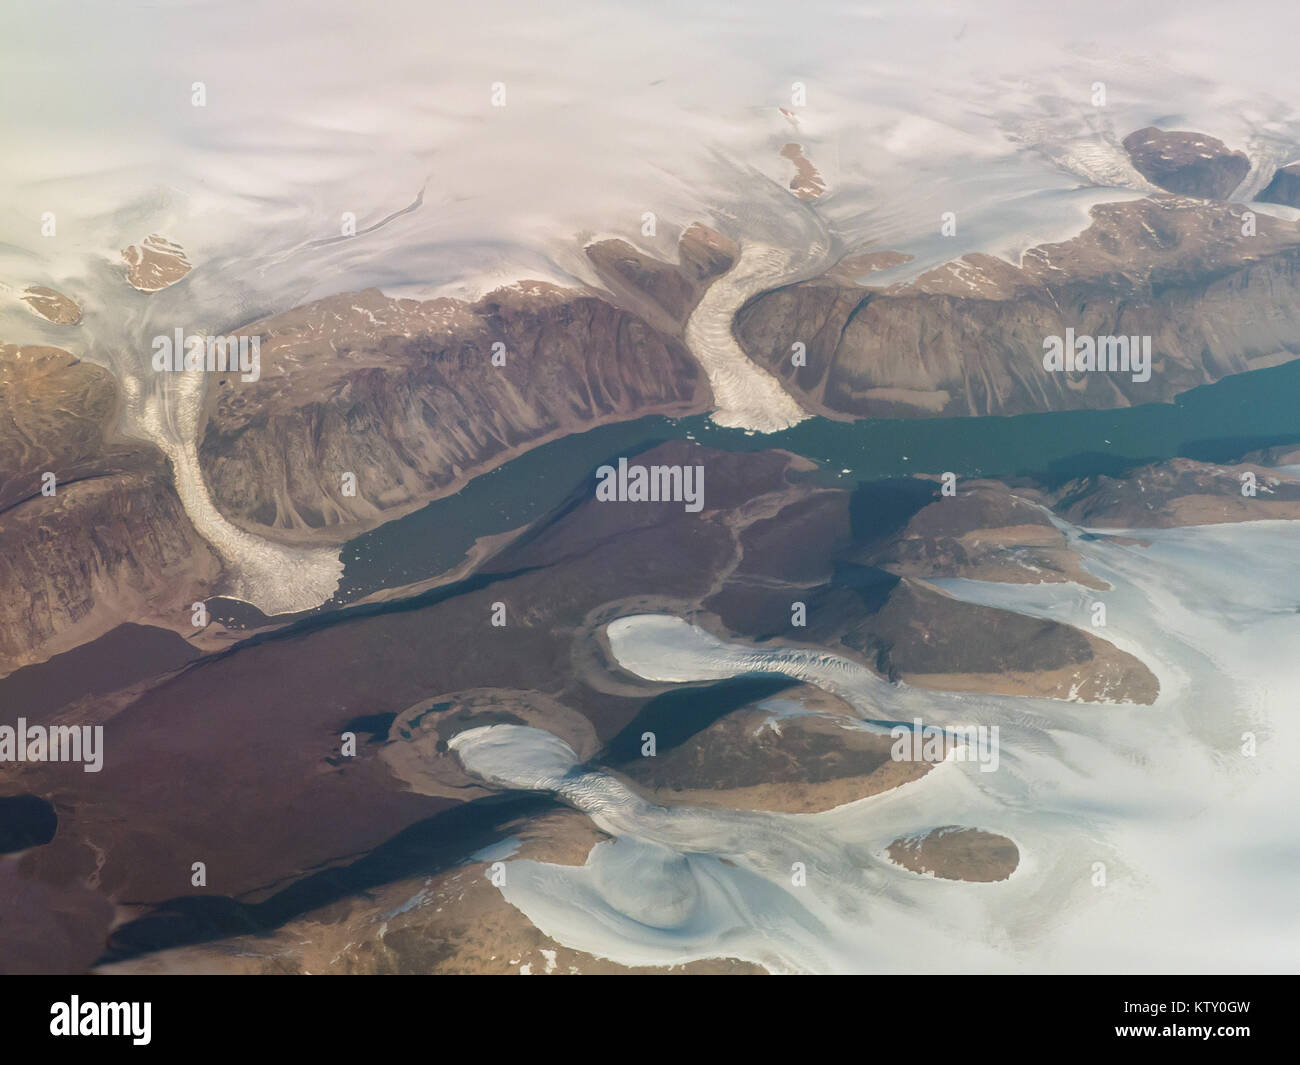 La Isla de Baffin (Nunavut), Canadá: una toma aérea de los glaciares cerca de la entrada del estanque. Foto de stock